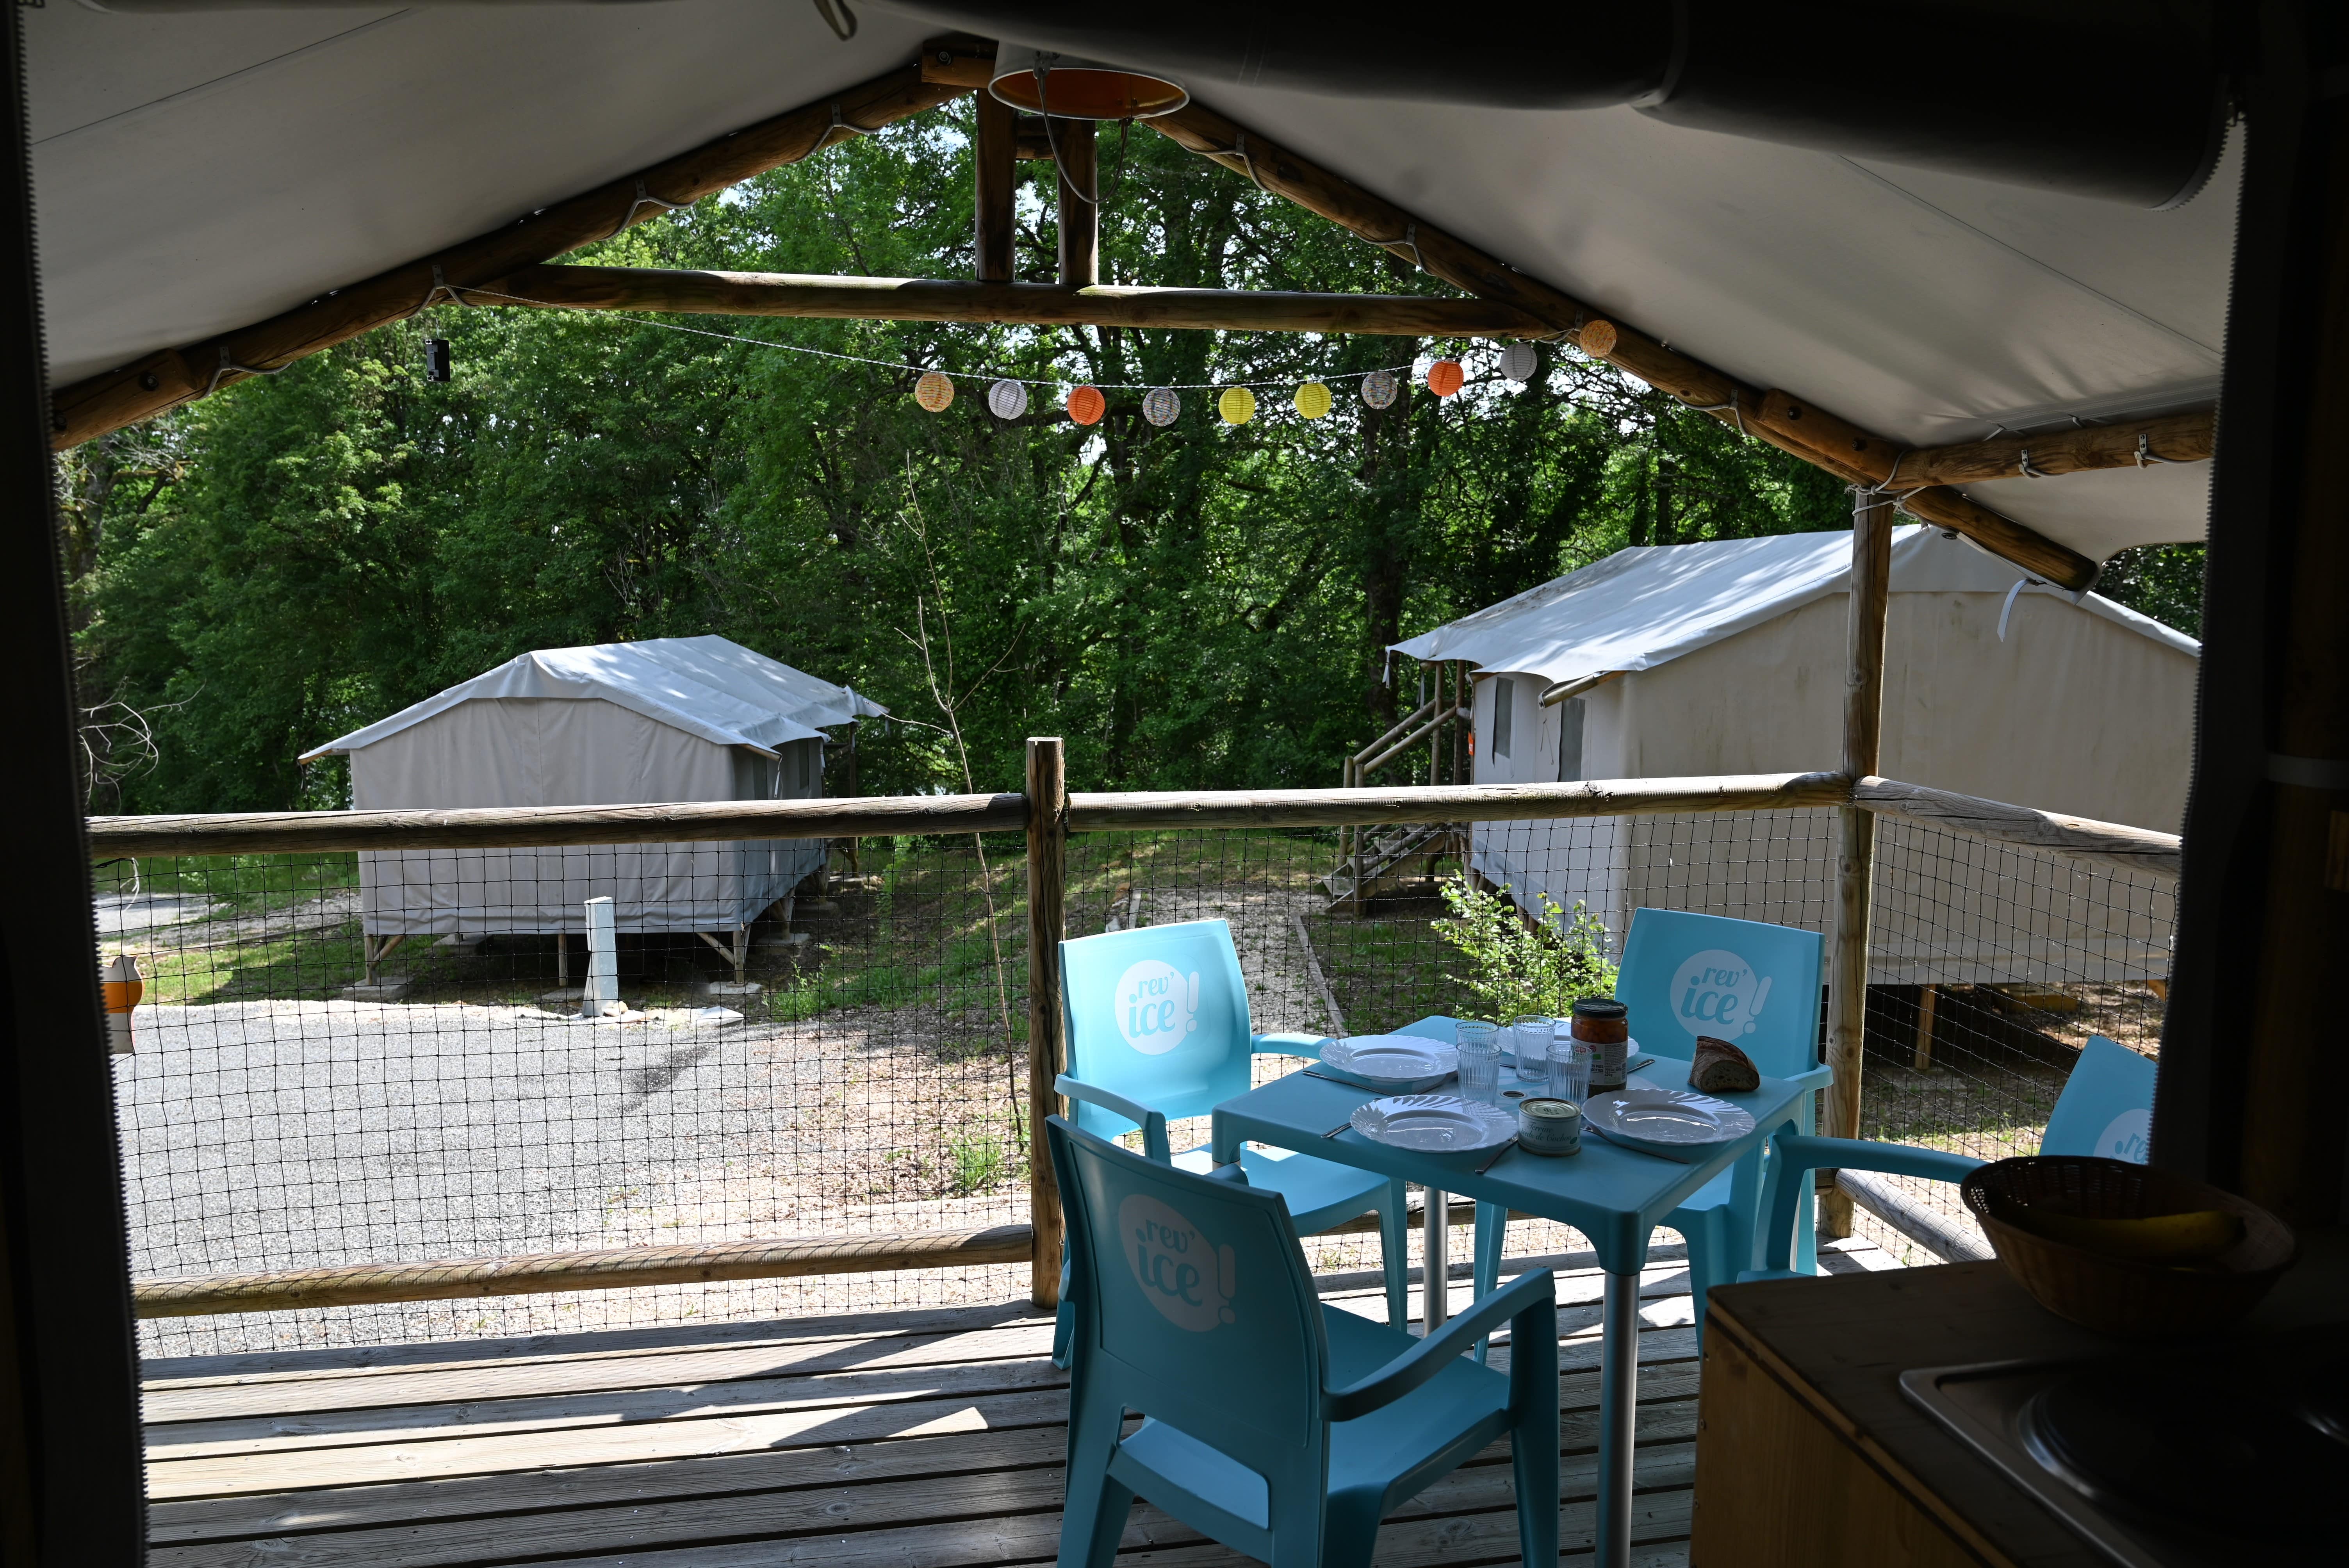 Location - Cabanes Lodges Sur Pilotis Standard 23M² (Sans Sanitaires) (2 Ch- 4 Pers) + Terrasse Couverte - Flower Camping Lac aux Oiseaux